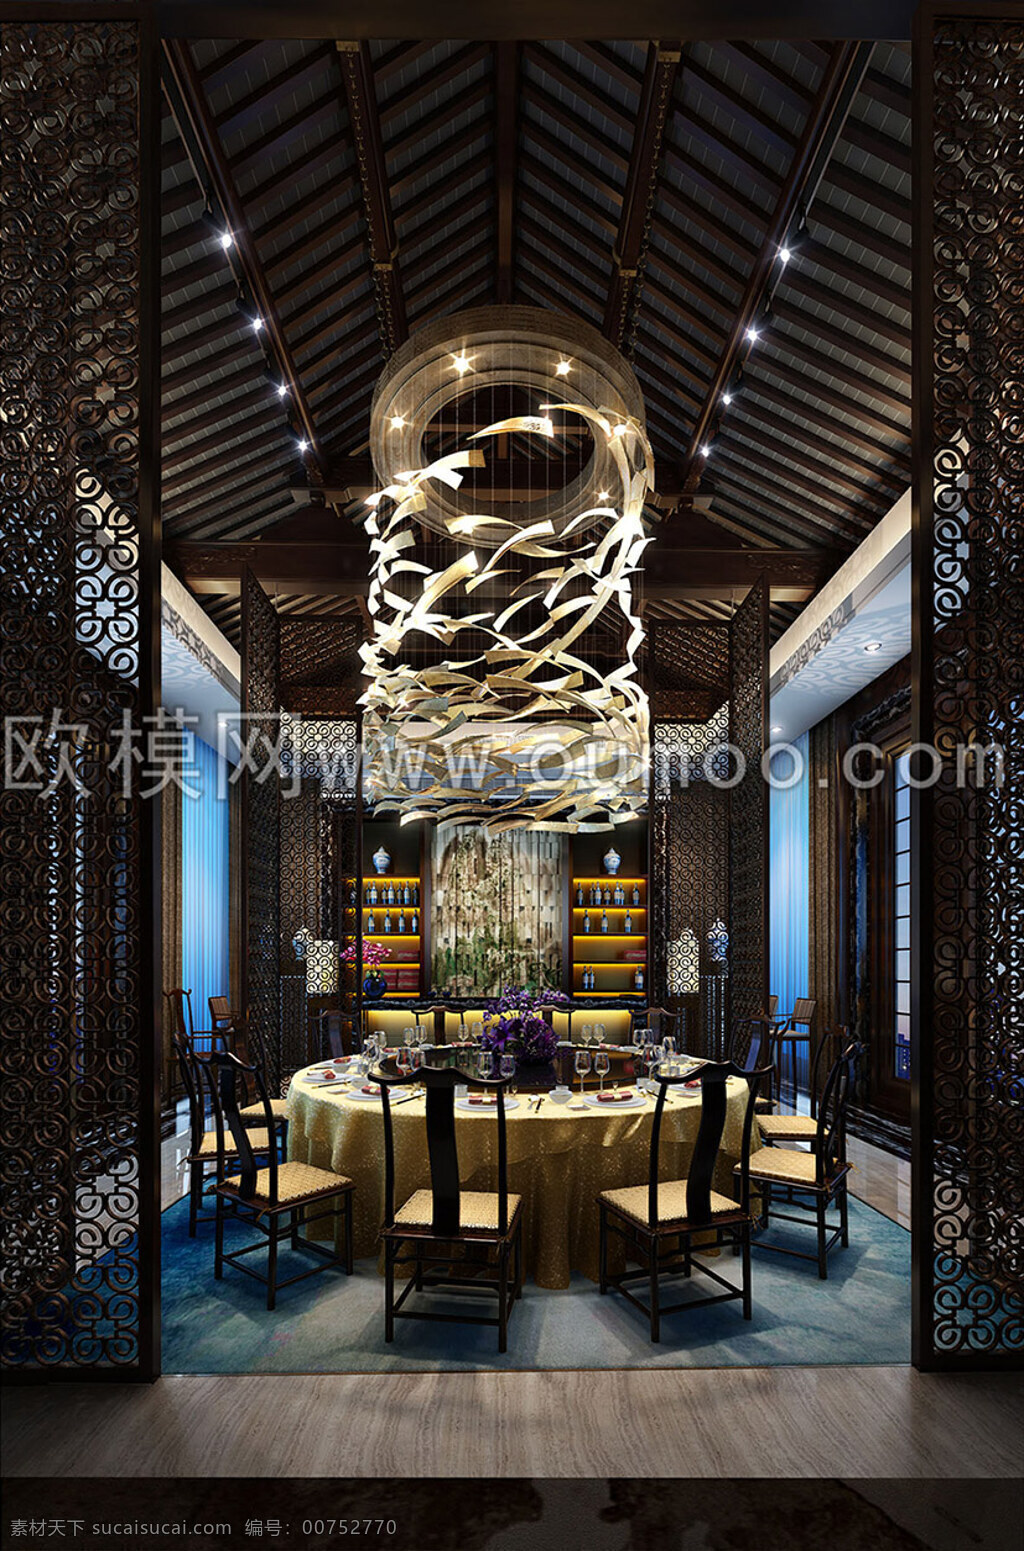 中式 酒店 奢华 餐厅 包间 大气吊灯 木地板 餐桌椅 3d渲染 3d模型 家装模型 效果图